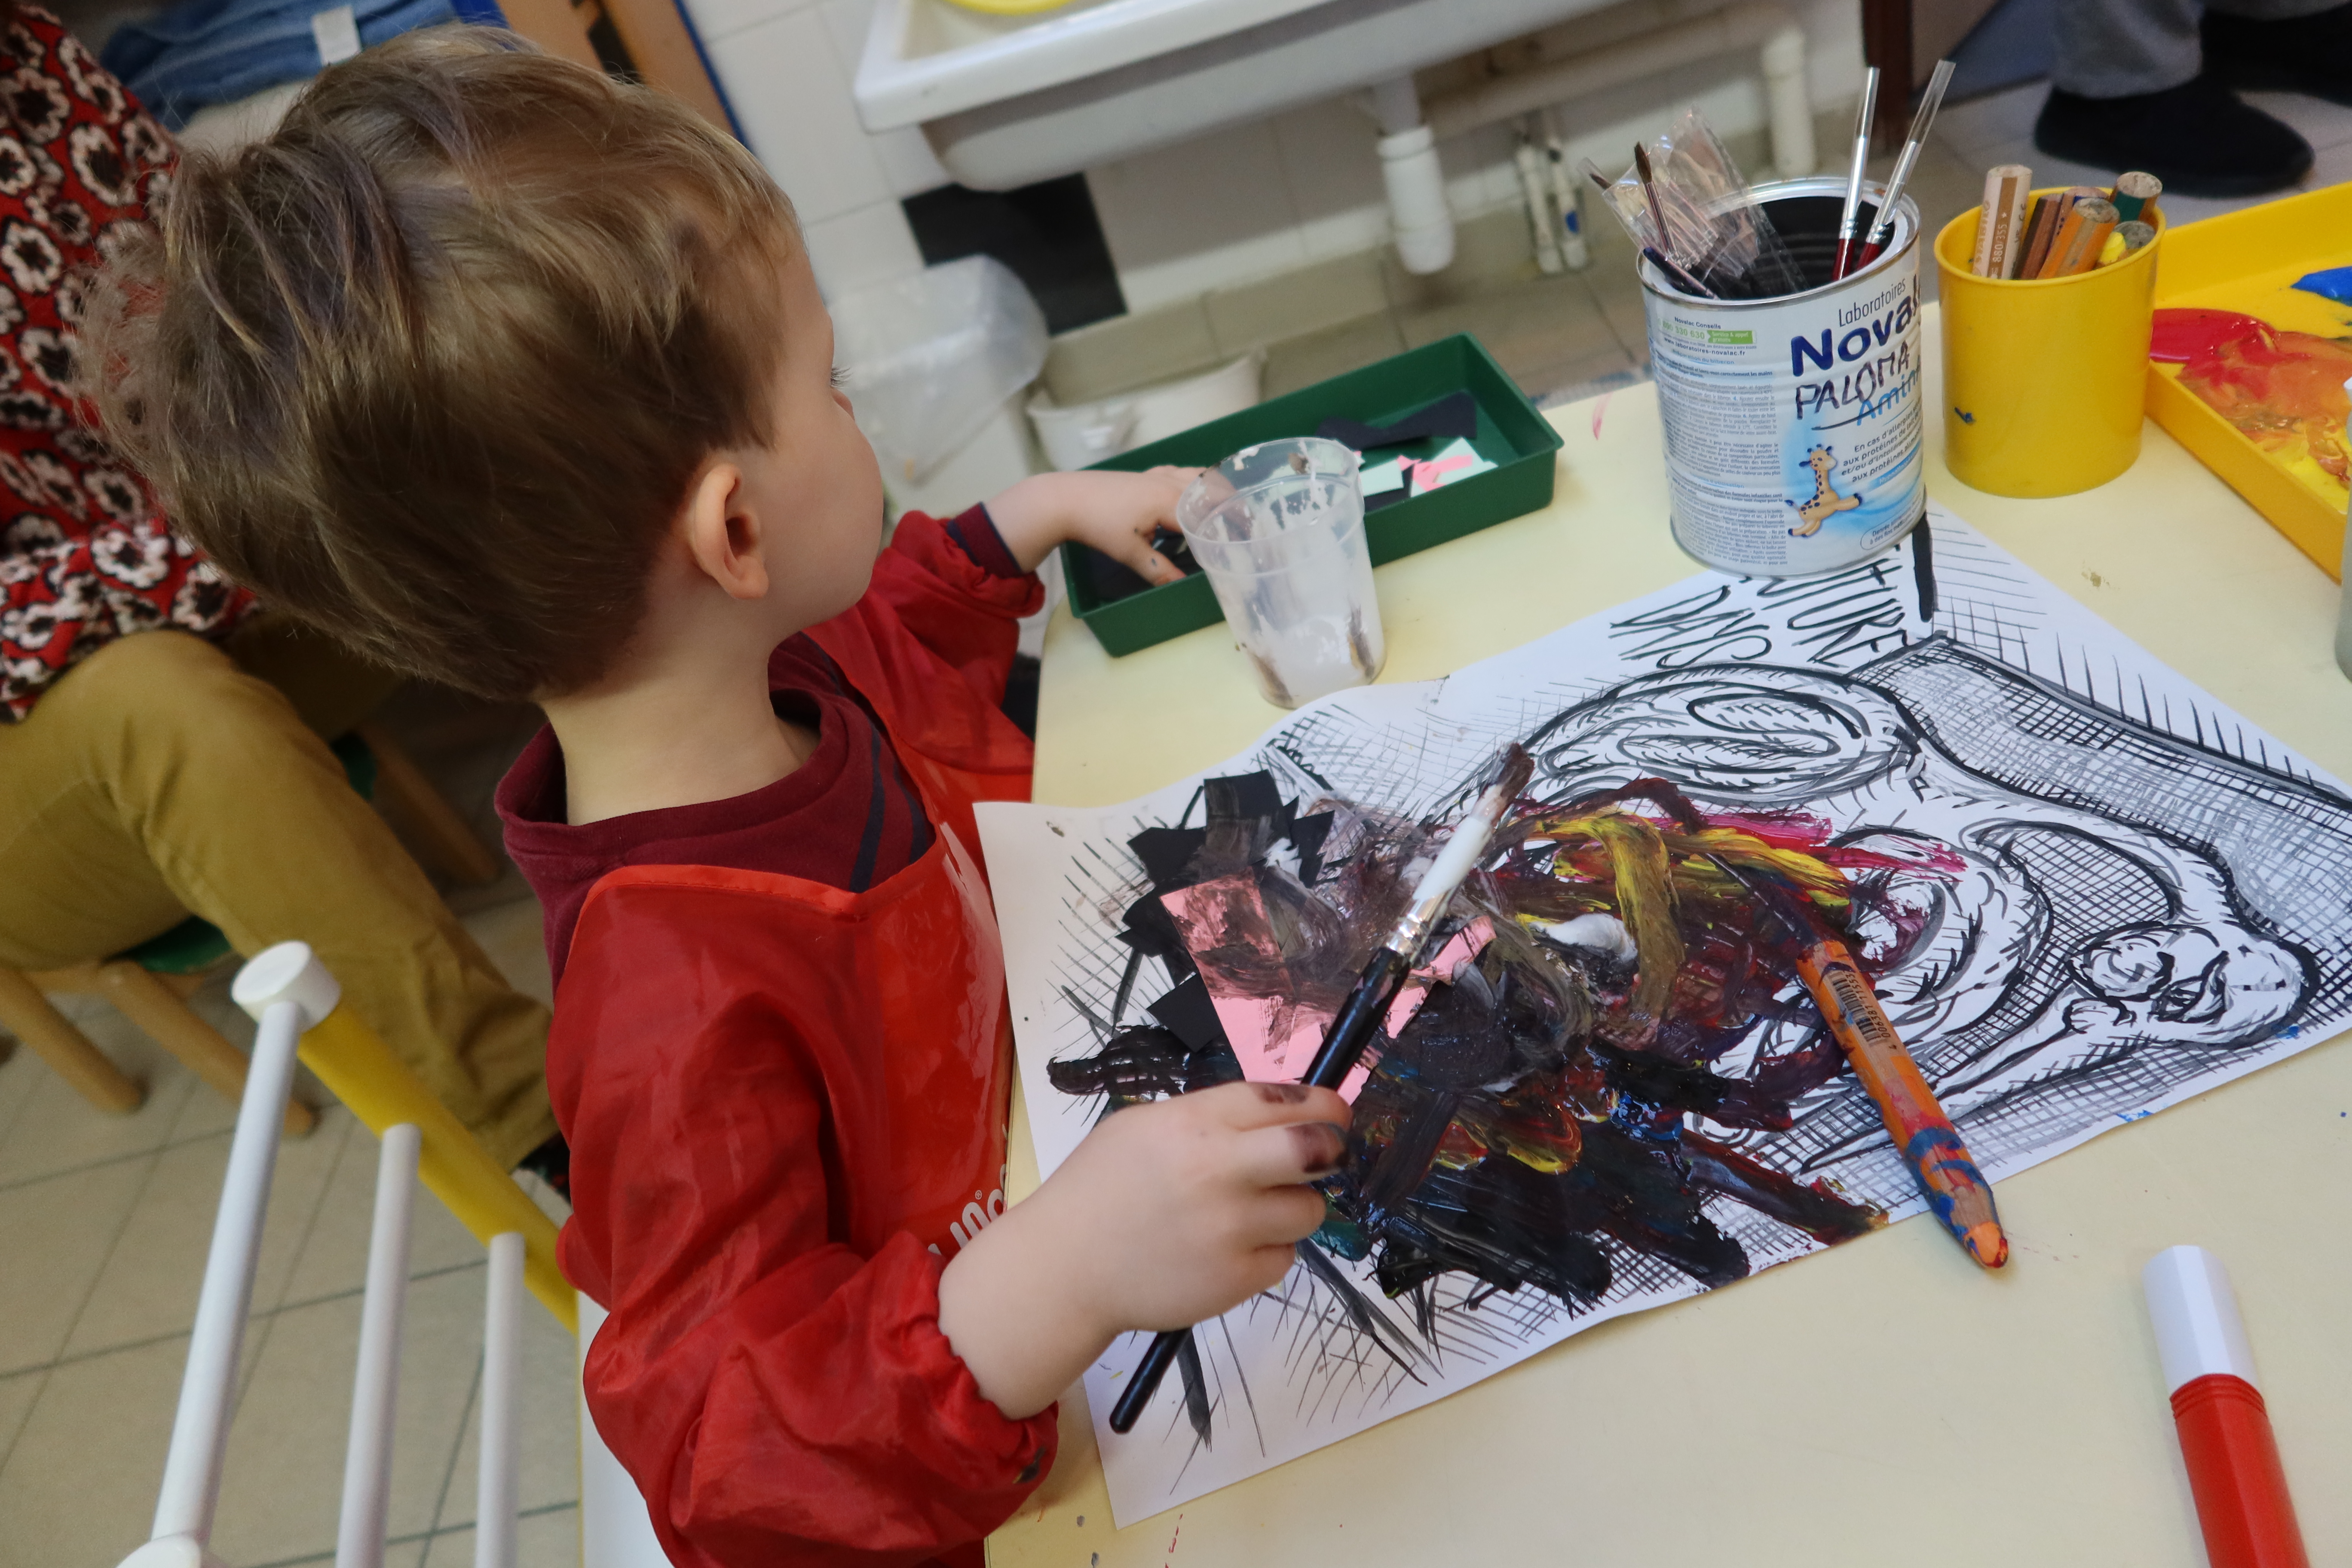 Un petit garçon place des petits bouts de papier colorés sur son dessin d'oiseau, puis il les recouvre de peinture